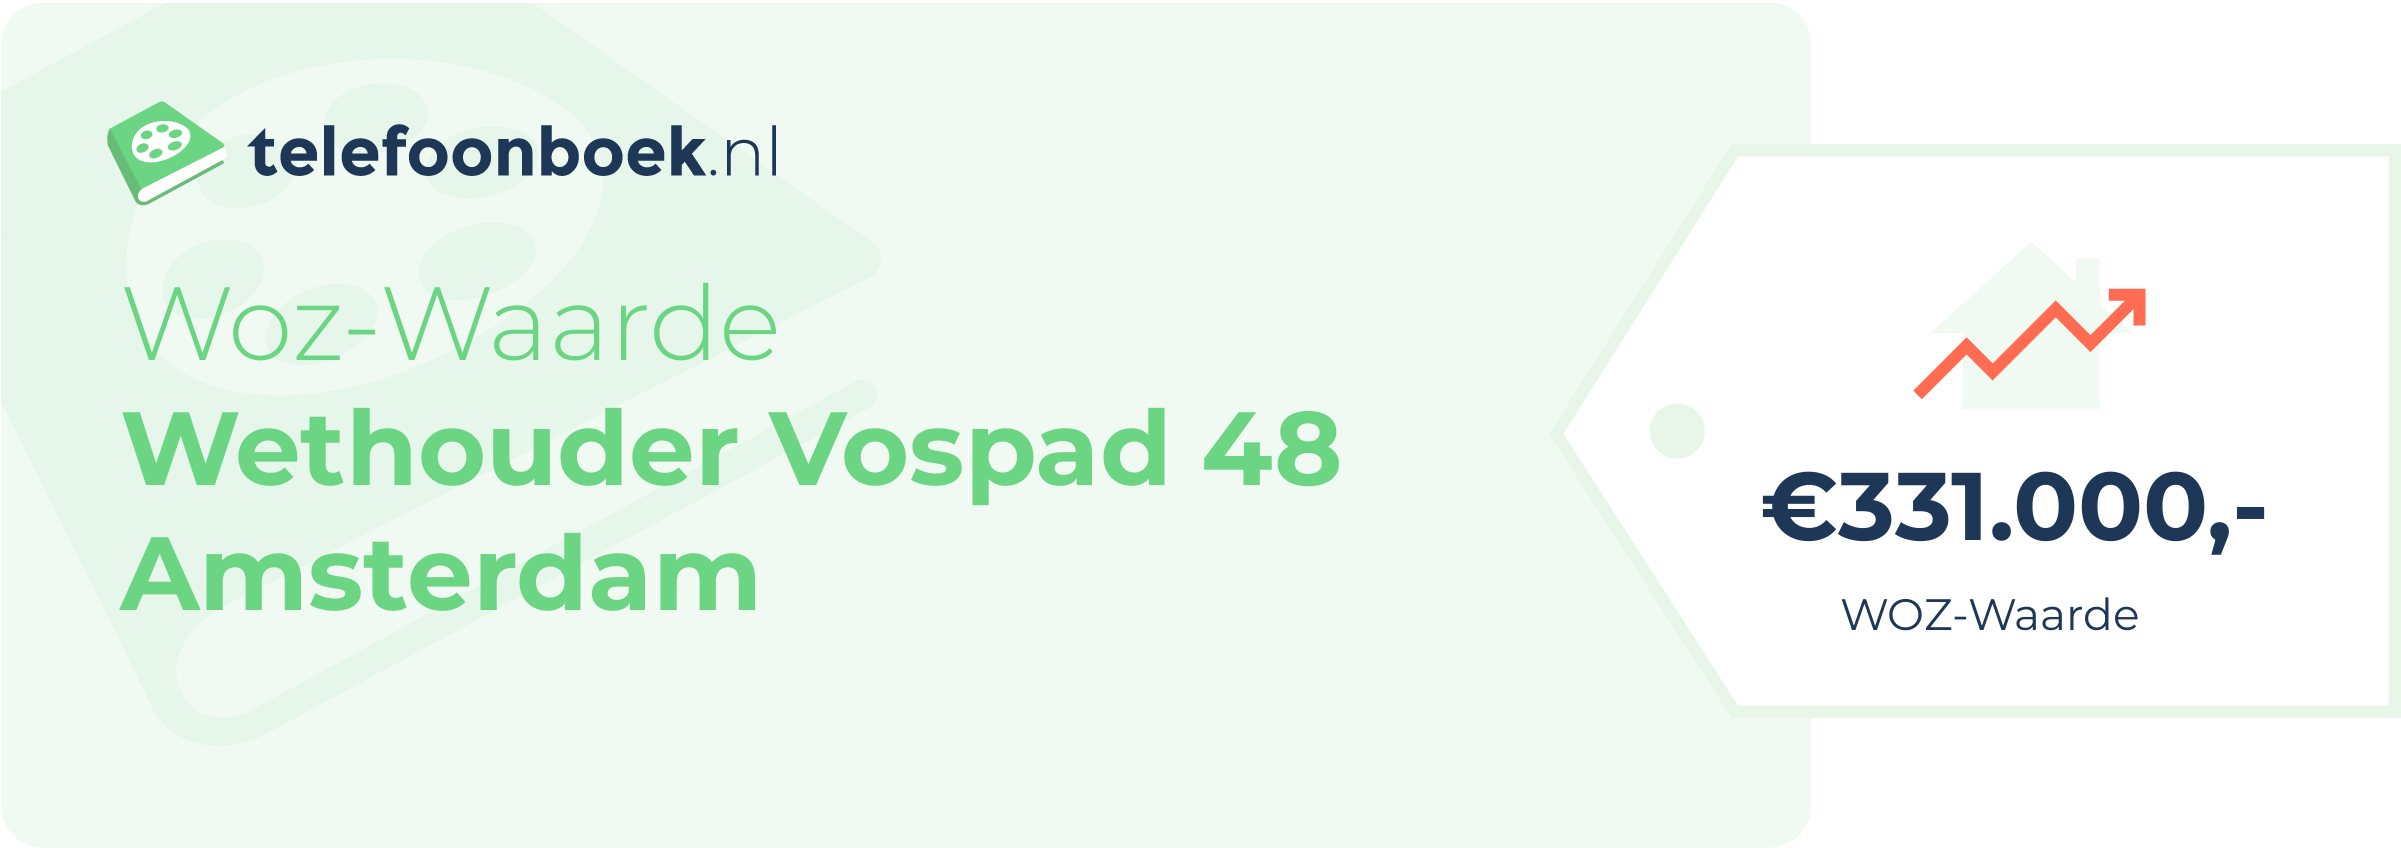 WOZ-waarde Wethouder Vospad 48 Amsterdam